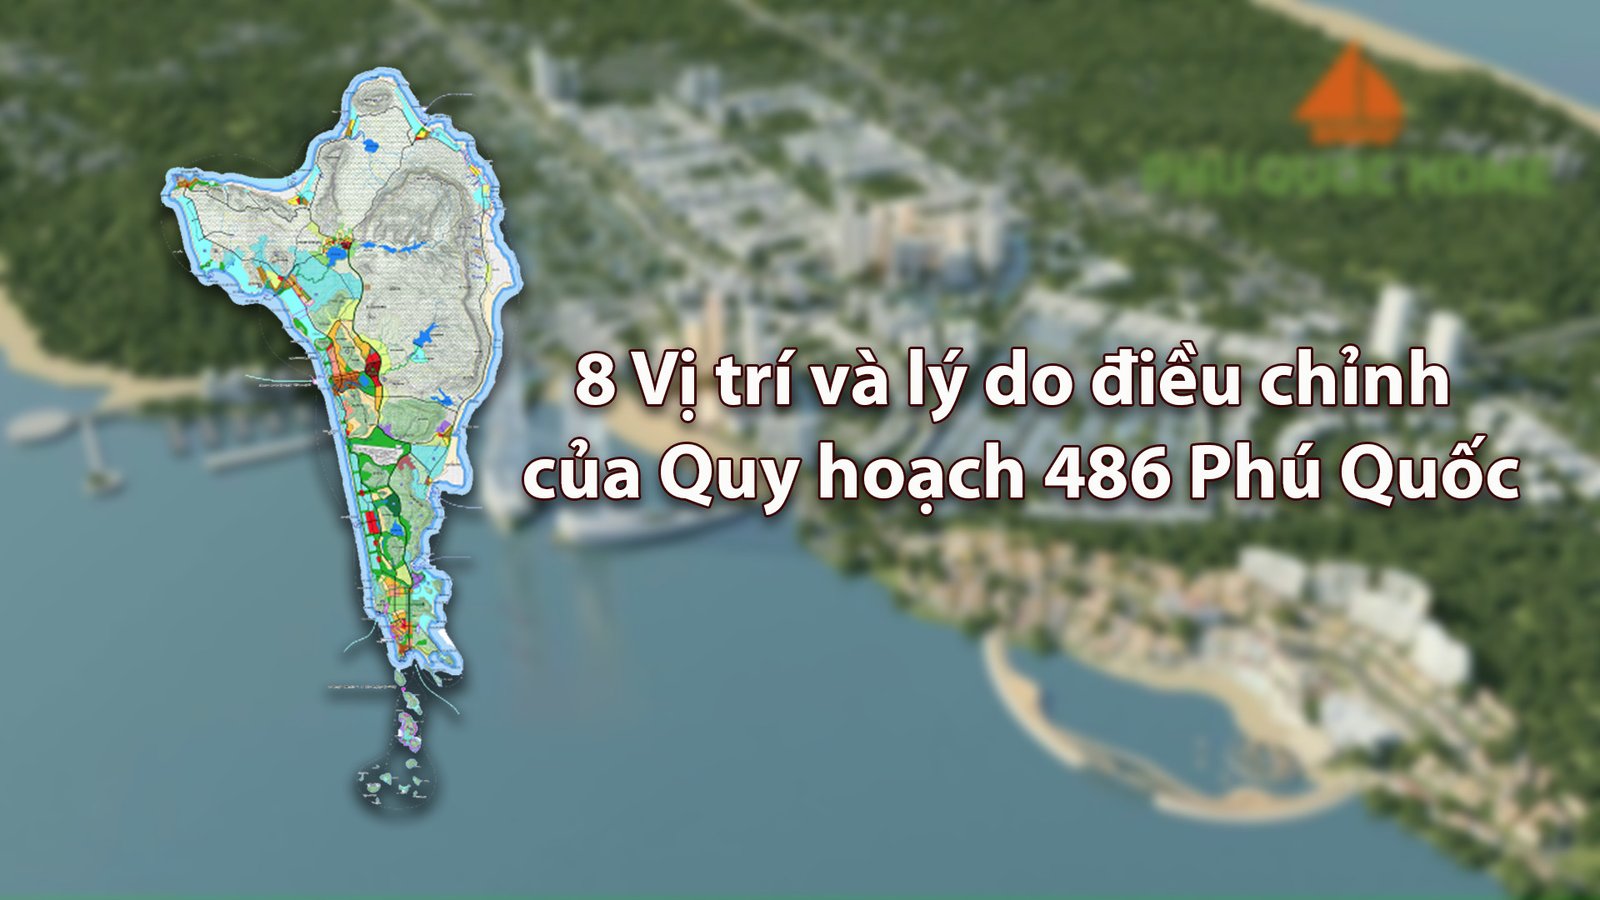 Quy hoạch 486 Phú Quốc 2024 mang đến cho chúng ta cái nhìn toàn diện về sự phát triển của cả địa phương và toàn hòn đảo ngọc Phú Quốc trong tương lai. Hãy cùng xem qua các hình ảnh liên quan để nhận biết rõ hơn về các kế hoạch phát triển đầy tiềm năng trong tương lai.